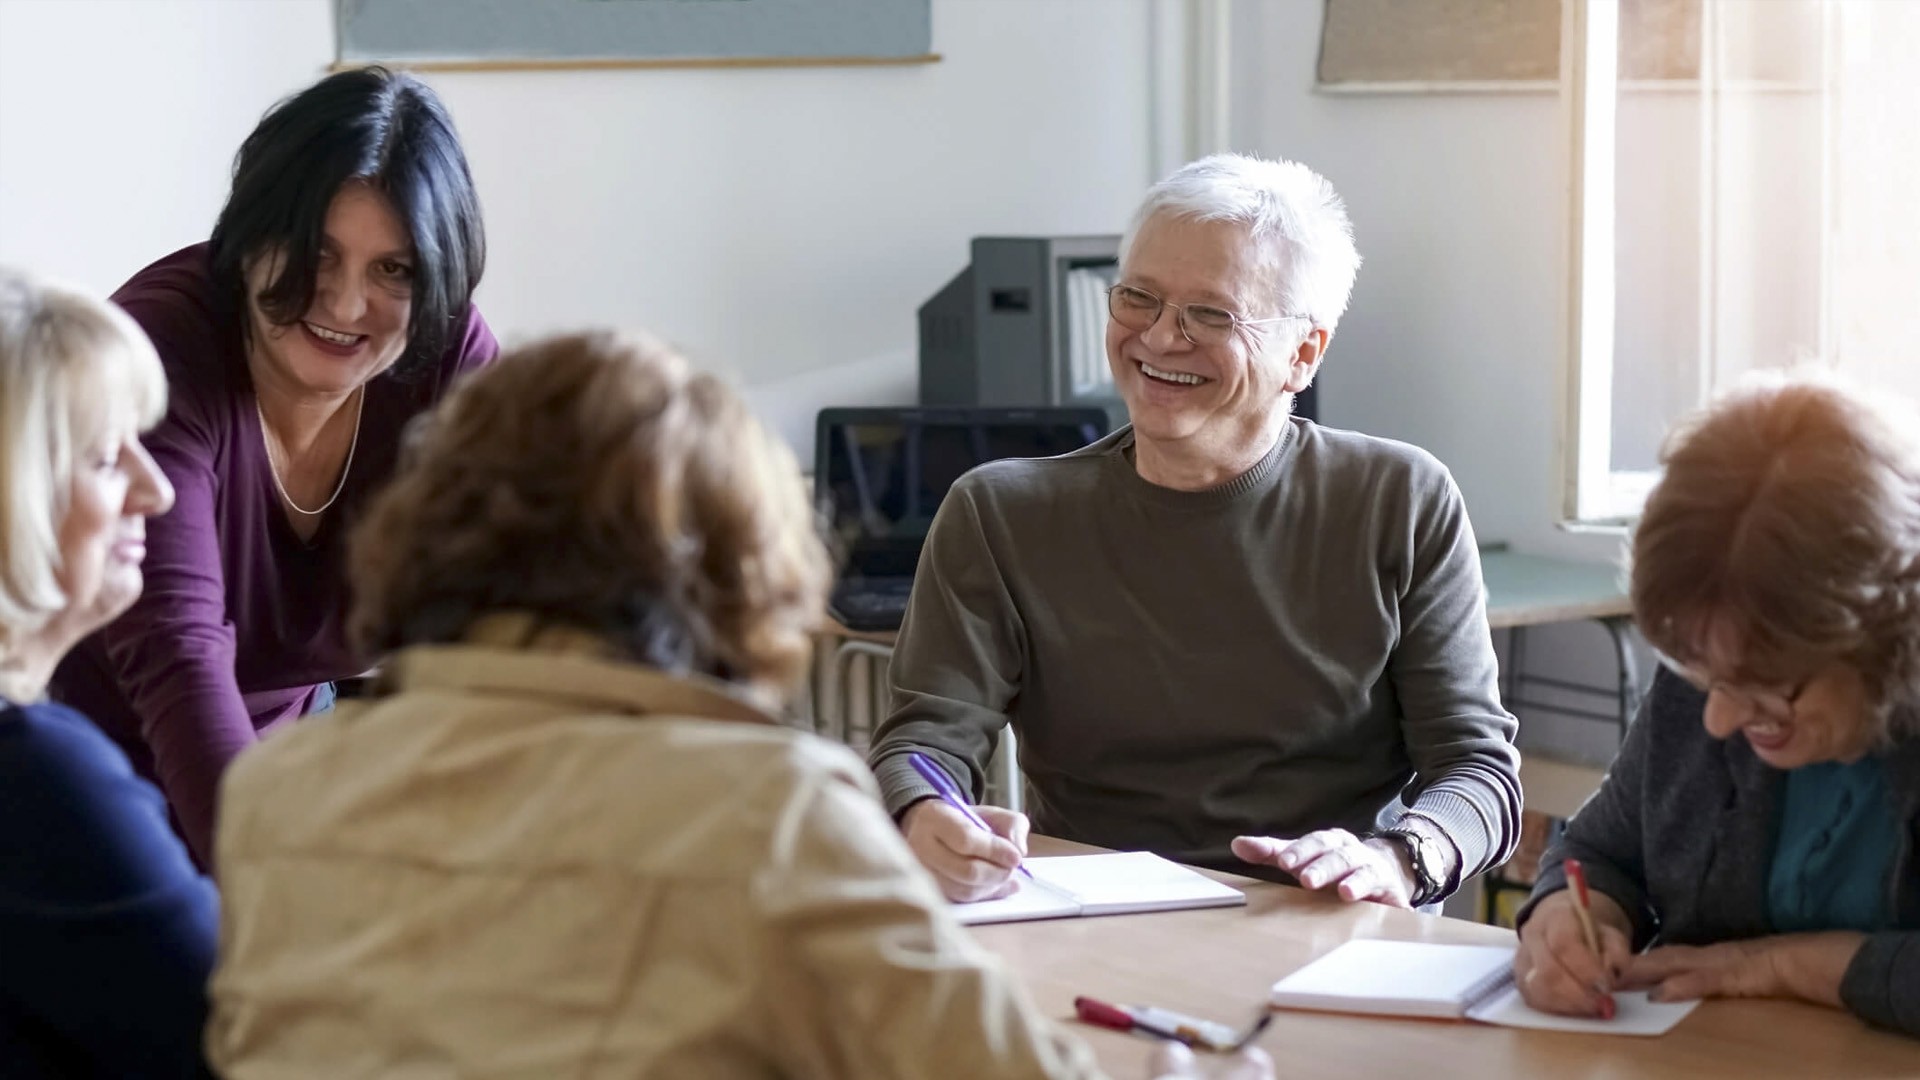 Top 5 trung tâm dạy tiếng Anh giao tiếp cho người lớn tuổi uy tín tại TP. HCM